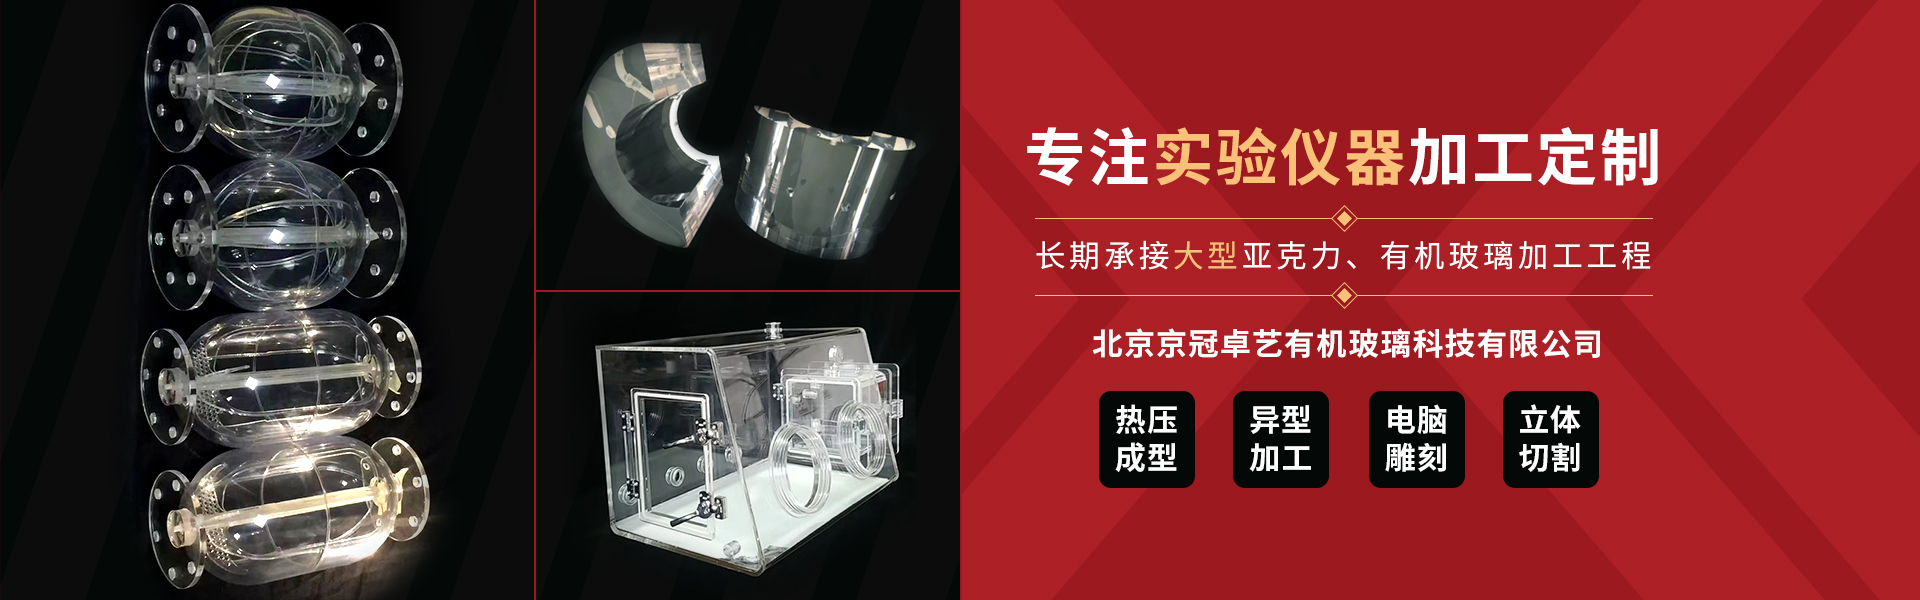 北京京冠卓艺有机玻璃科技有限公司